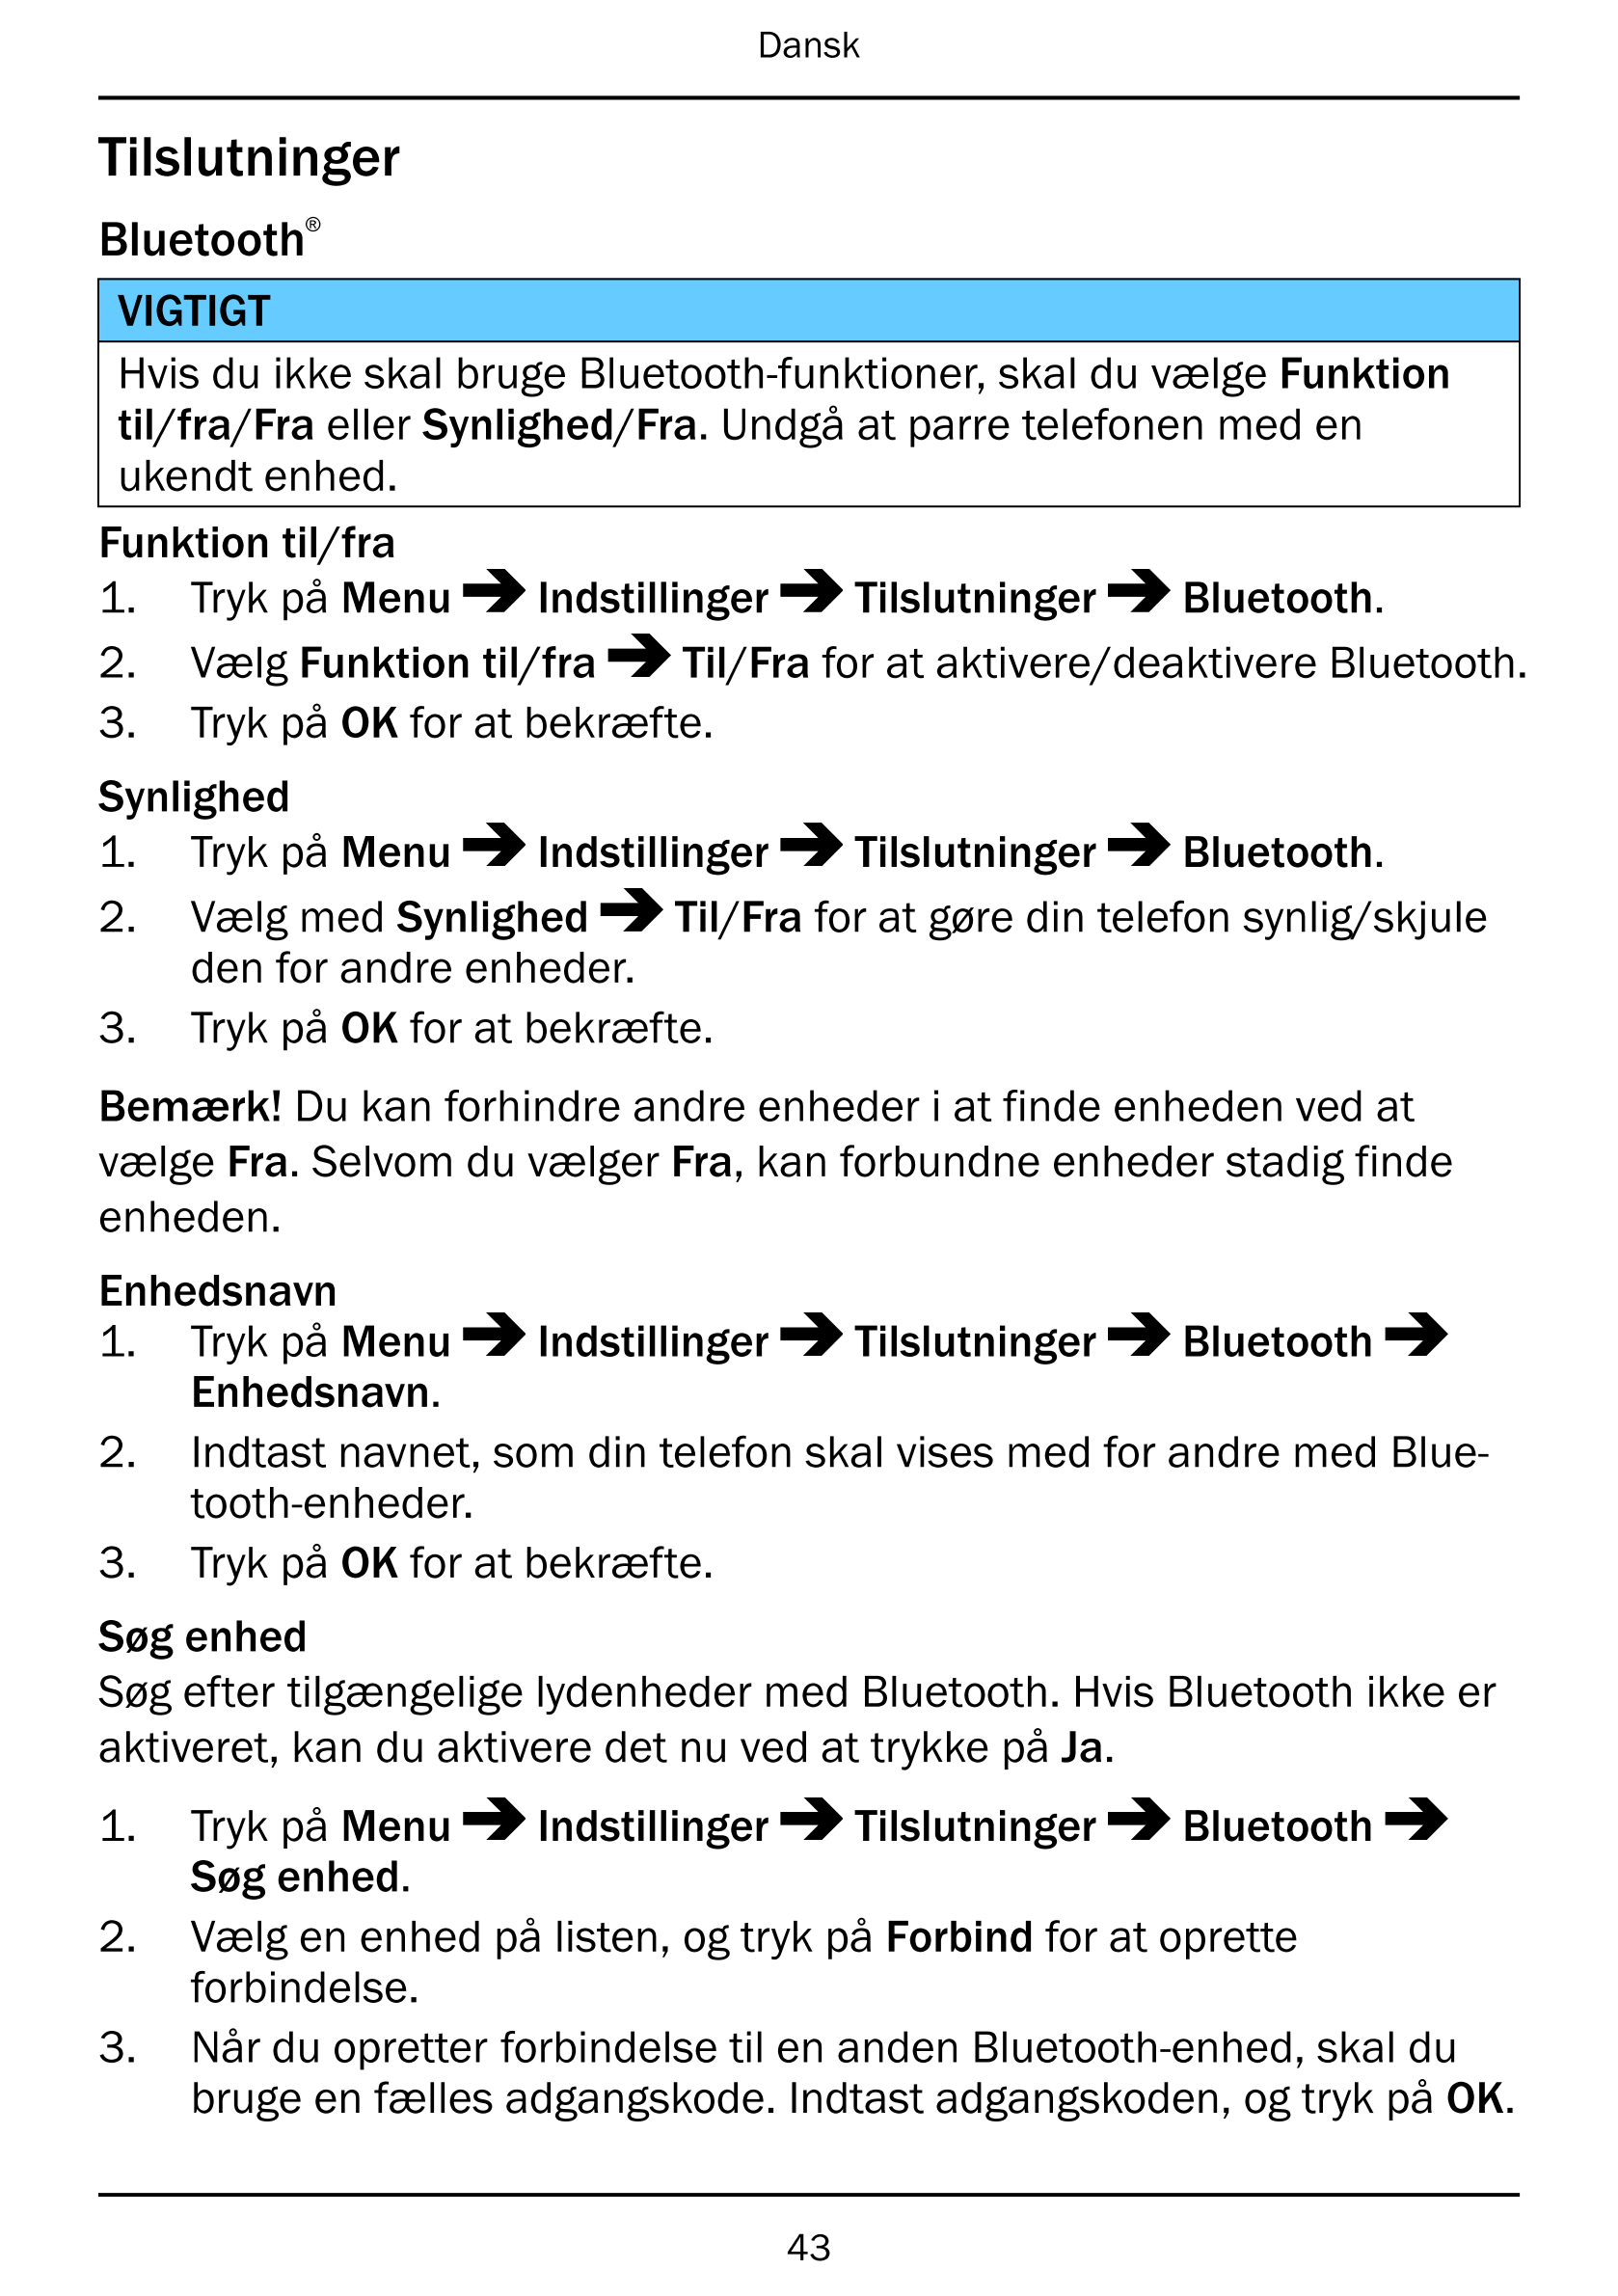 Dansk
Tilslutninger
Bluetooth®
VIGTIGT
Hvis du ikke skal bruge Bluetooth-funktioner, skal du vælge Funktion
til/fra/Fra eller Sy